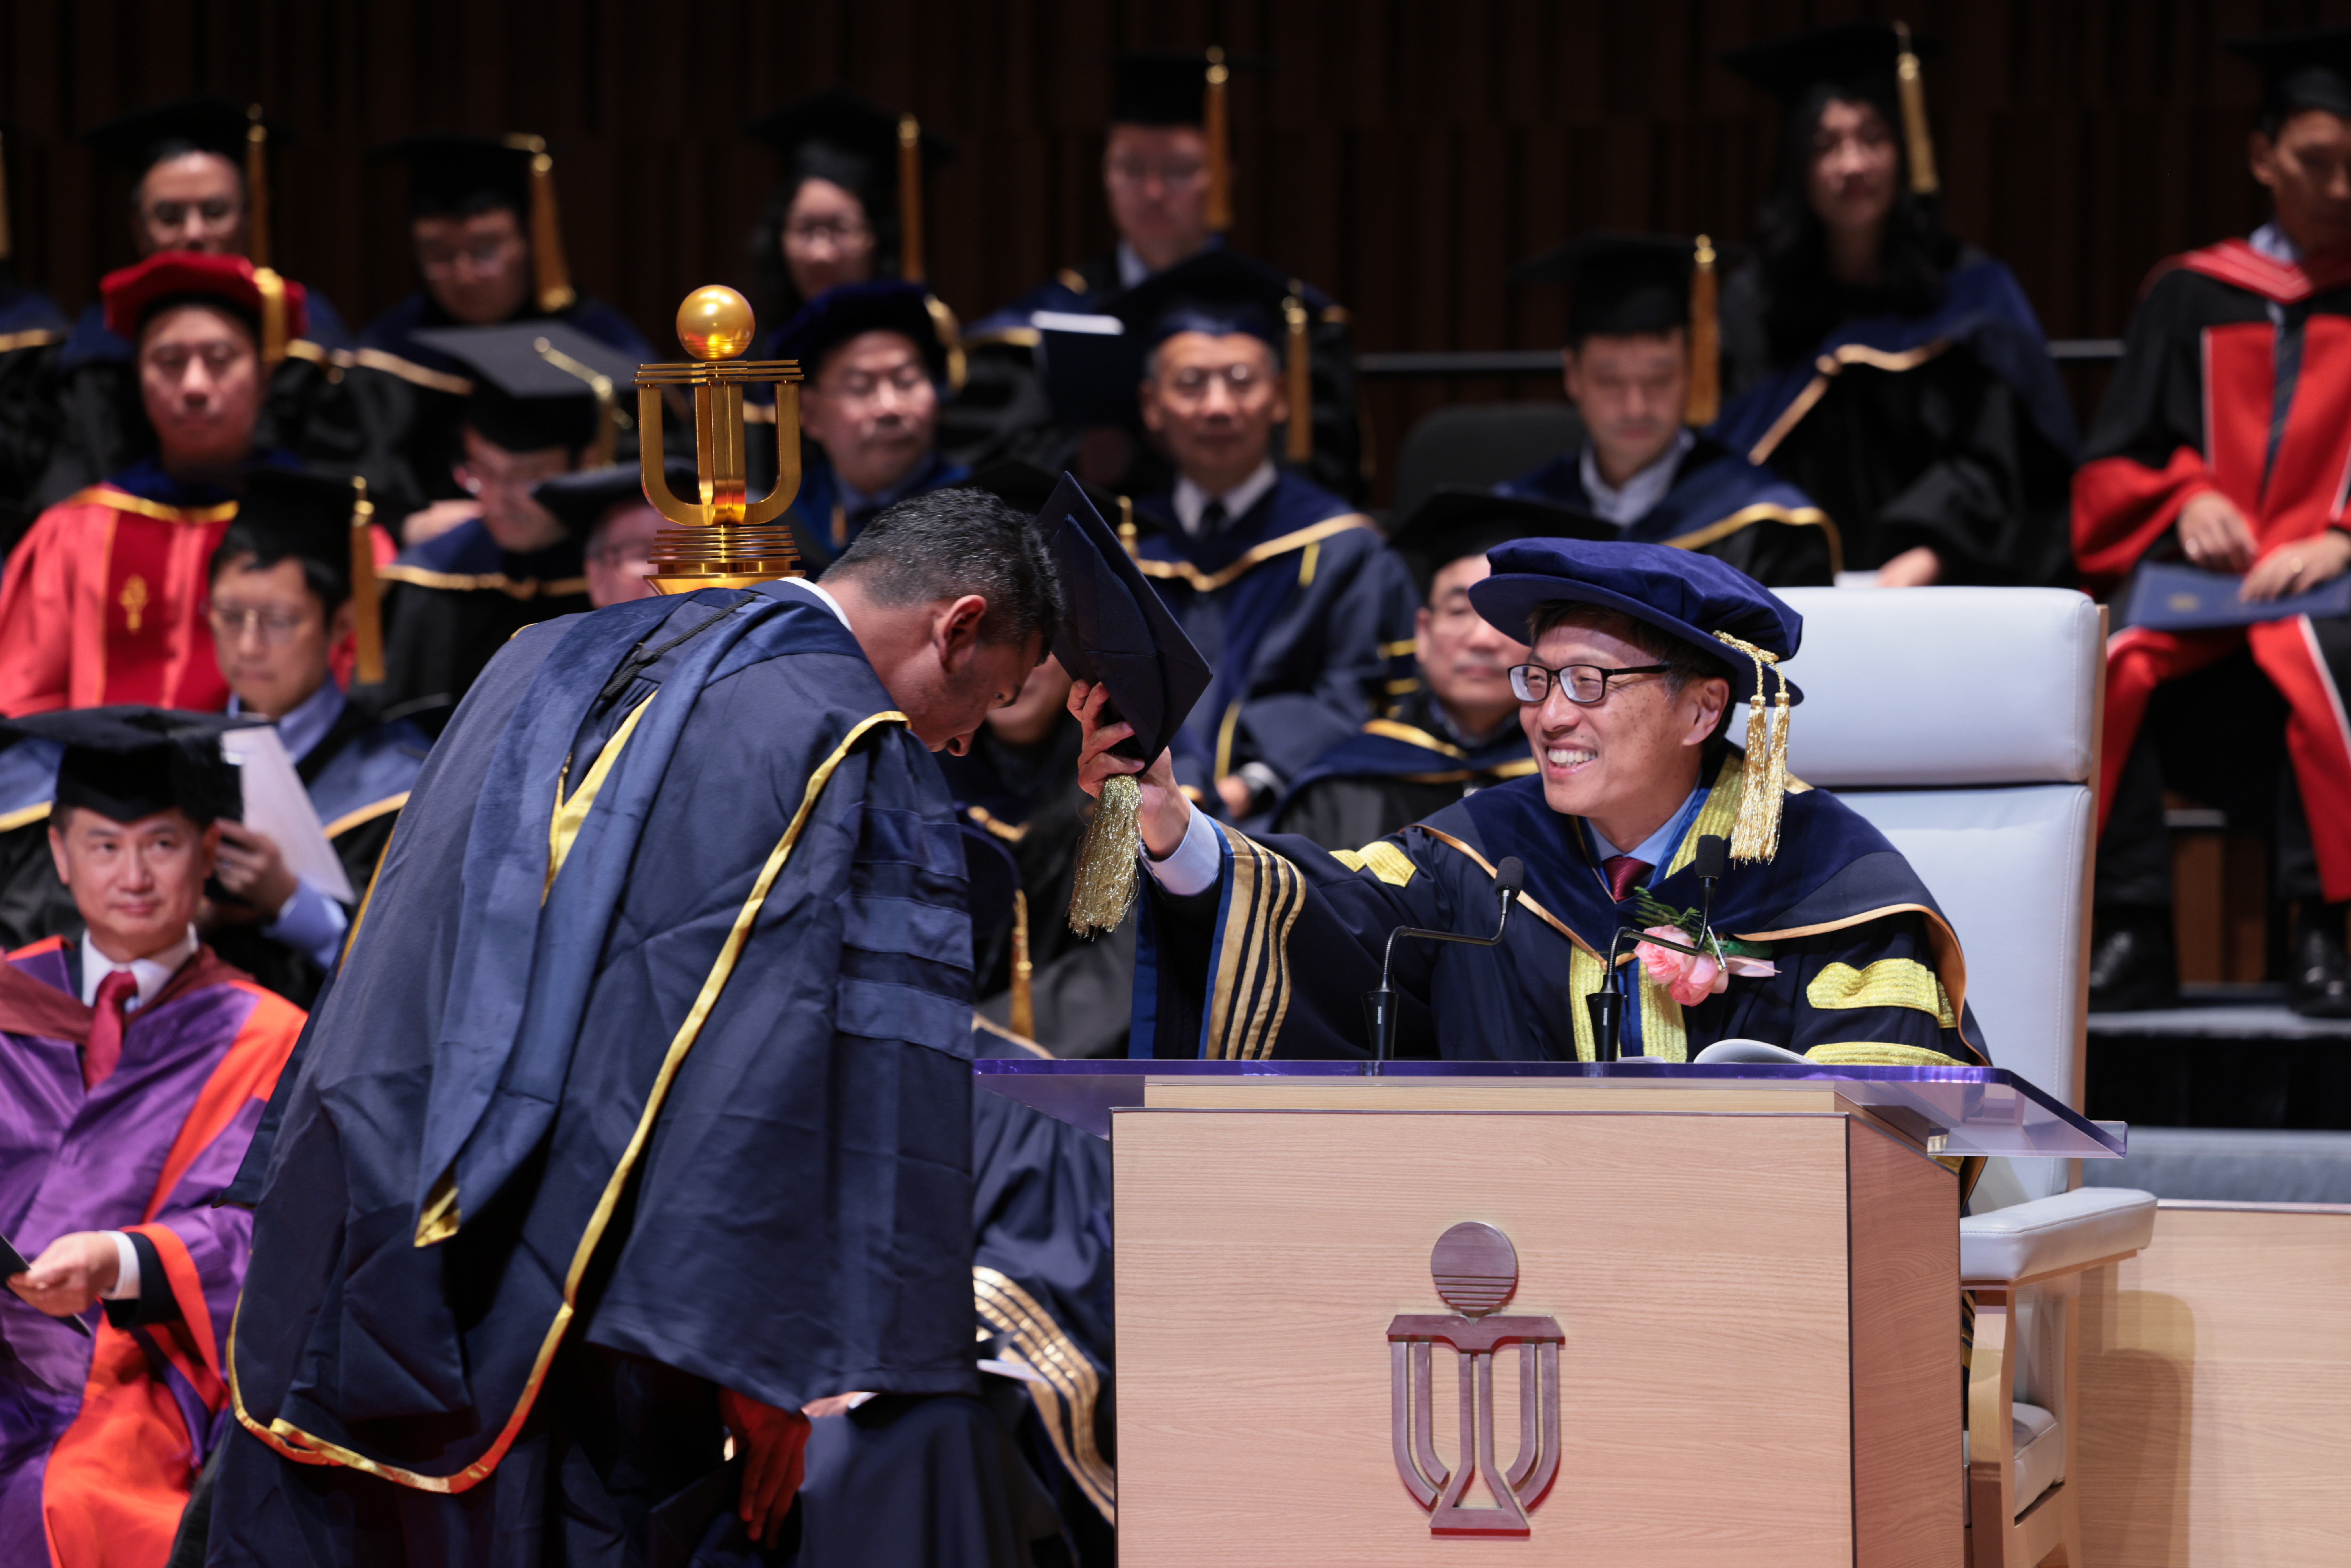 科大校董會主席沈向洋教授於典禮第二節向畢業生頒授學位。